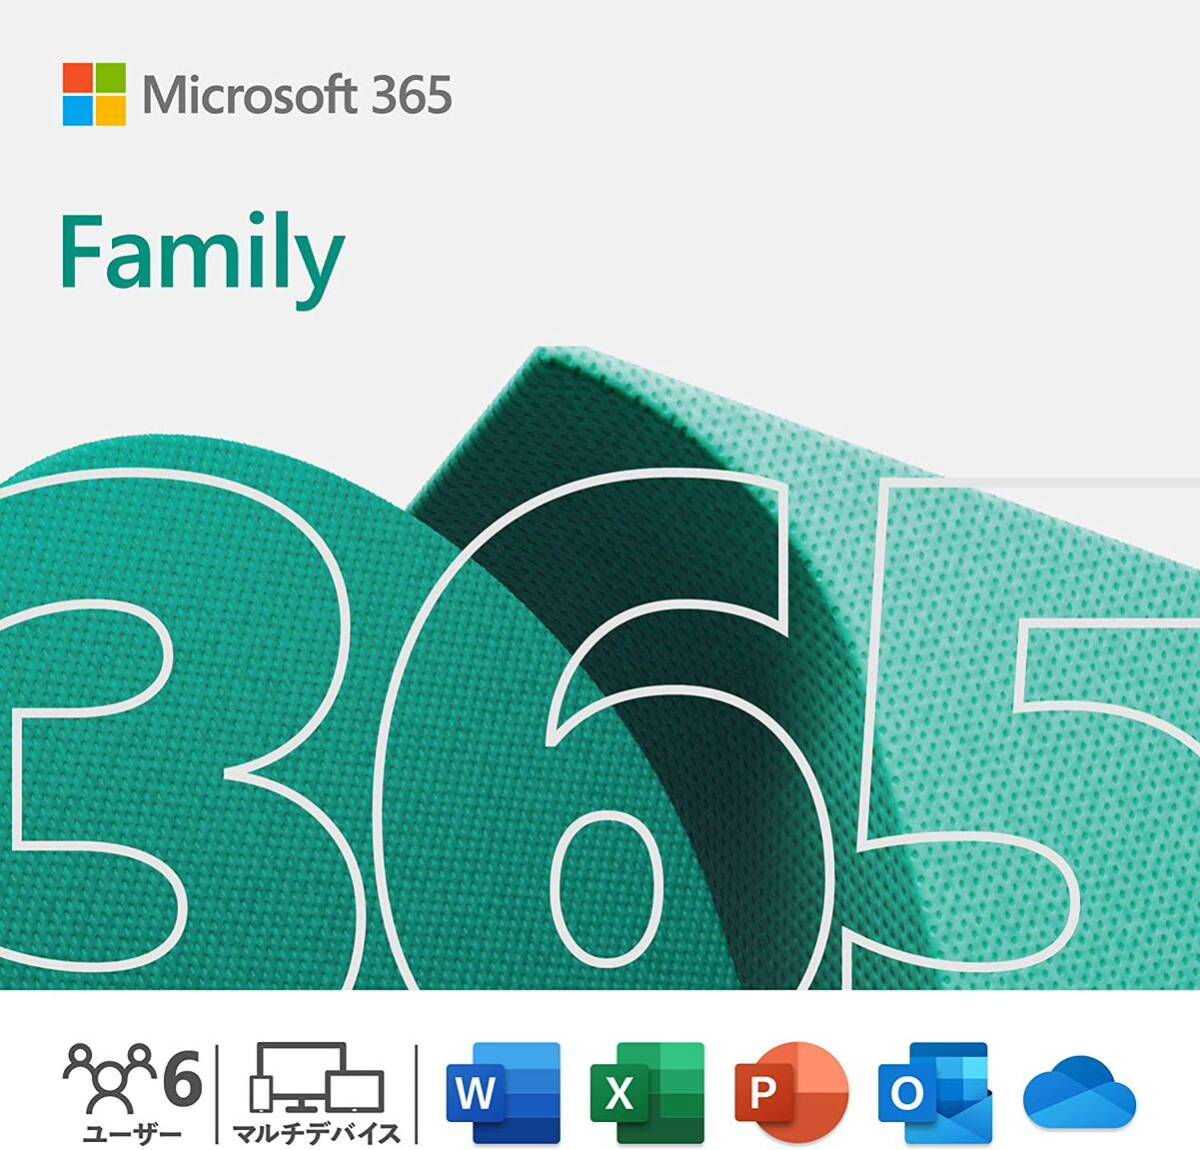  стандартный версия Microsoft 365 Family( новейший 1 год версия )Win/Mac/iPad install шт. число безграничный ( одновременно использование возможность шт. число 5 шт. )